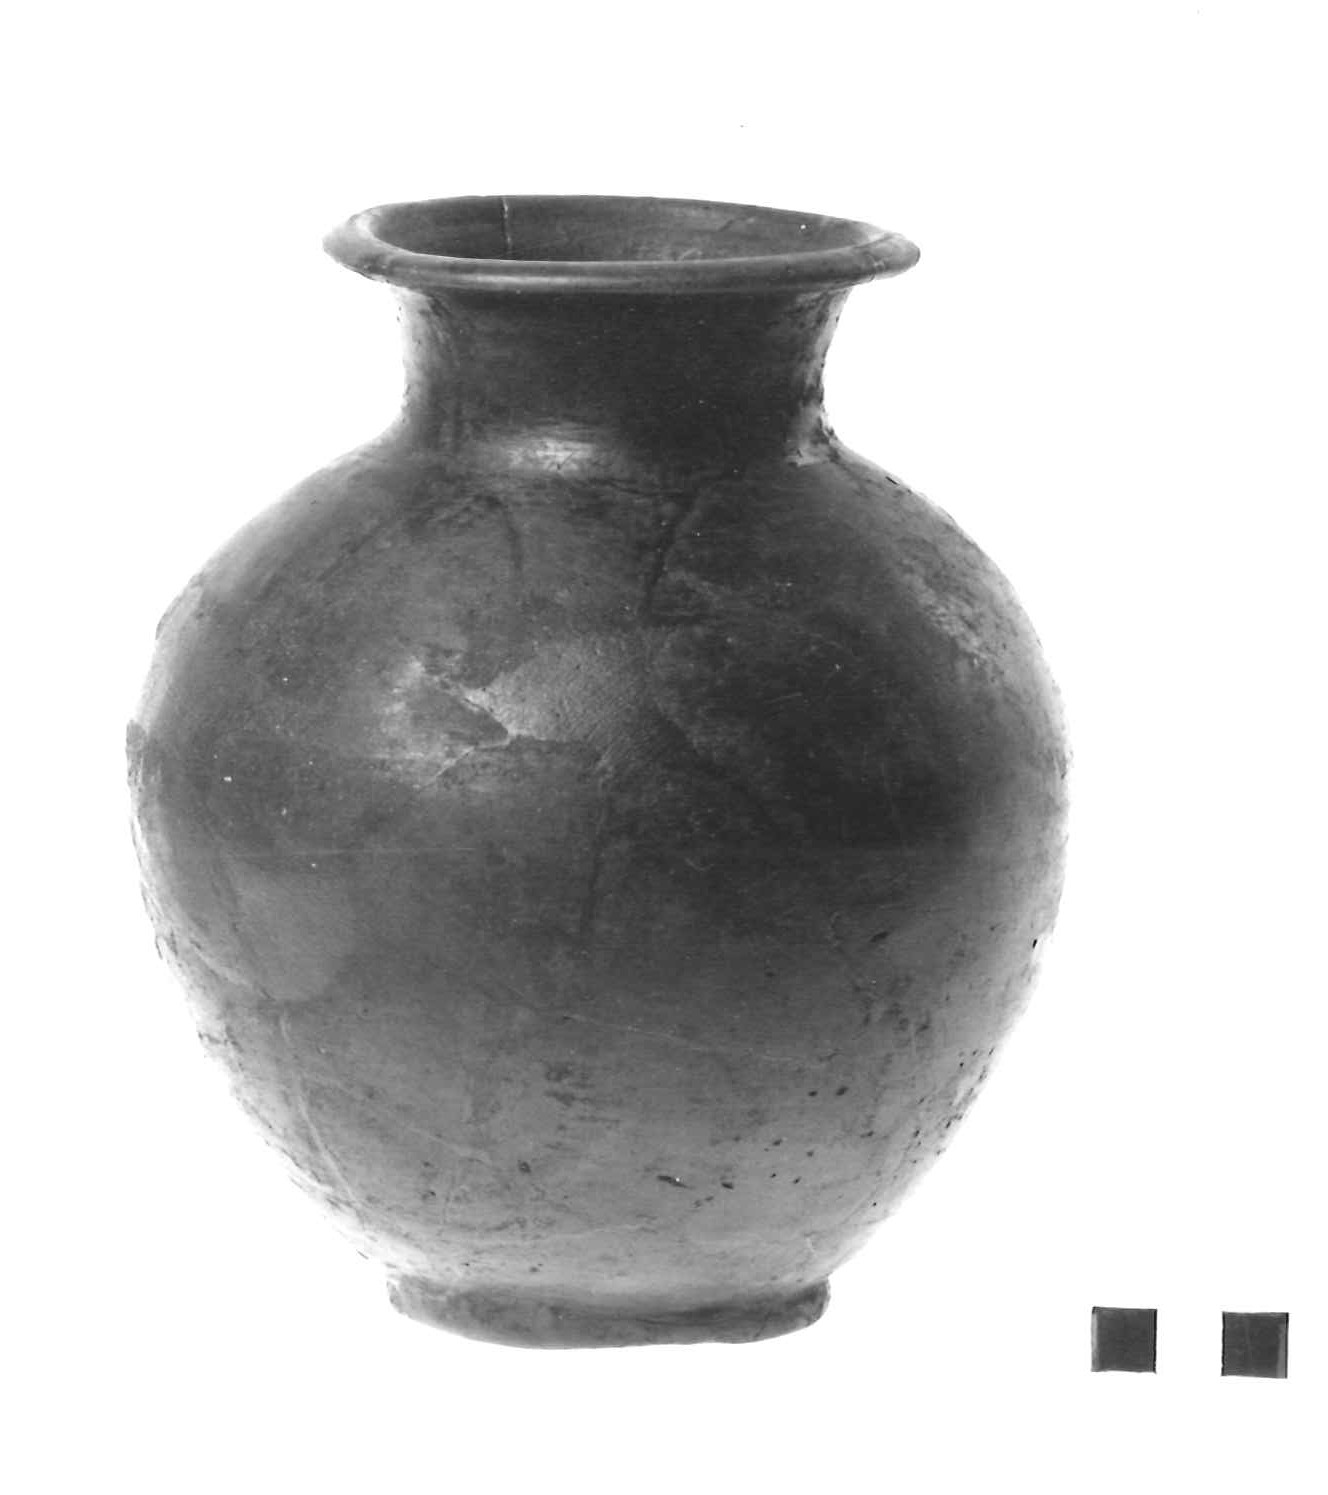 olletta a collo distinto - produzione etrusca (secc. VI - V a.C)